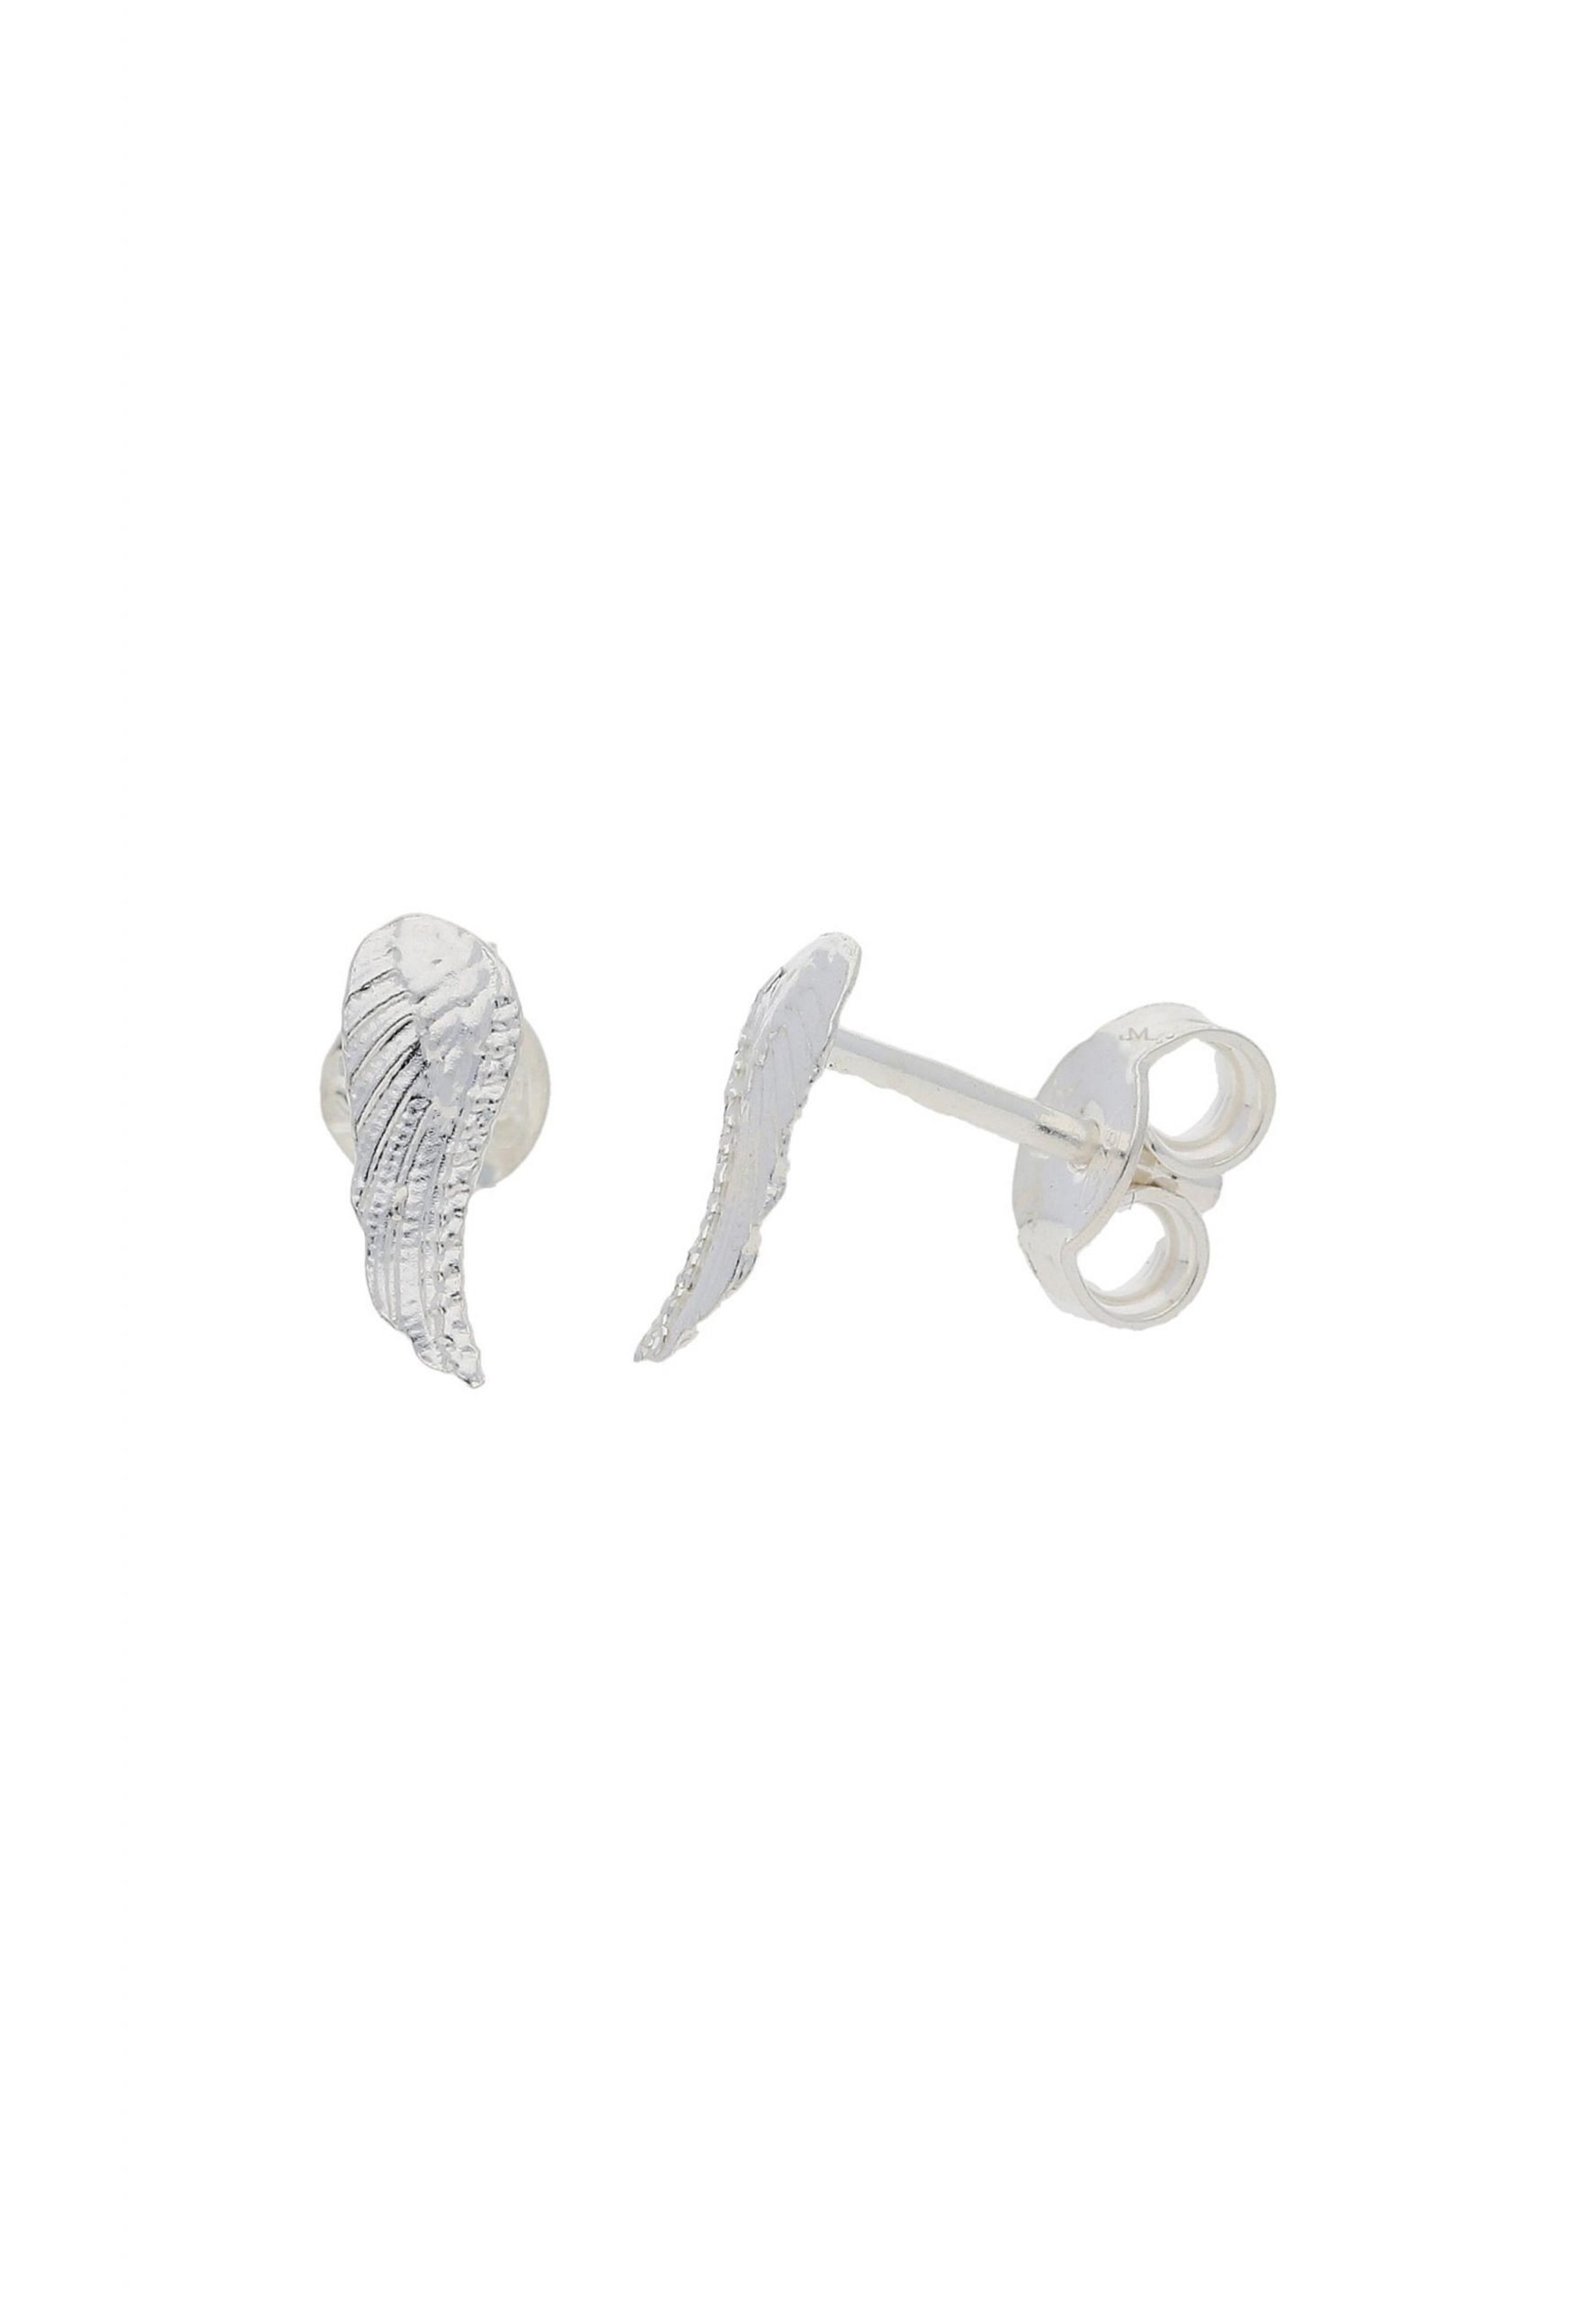 JuwelmaLux Paar Ohrstecker Ohrstecker Silber Flügel Ohrringe 9,7 x 3,2 mm (2-tlg), Damen Ohrstecker Silber 925/000, inkl. Schmuckschachtel